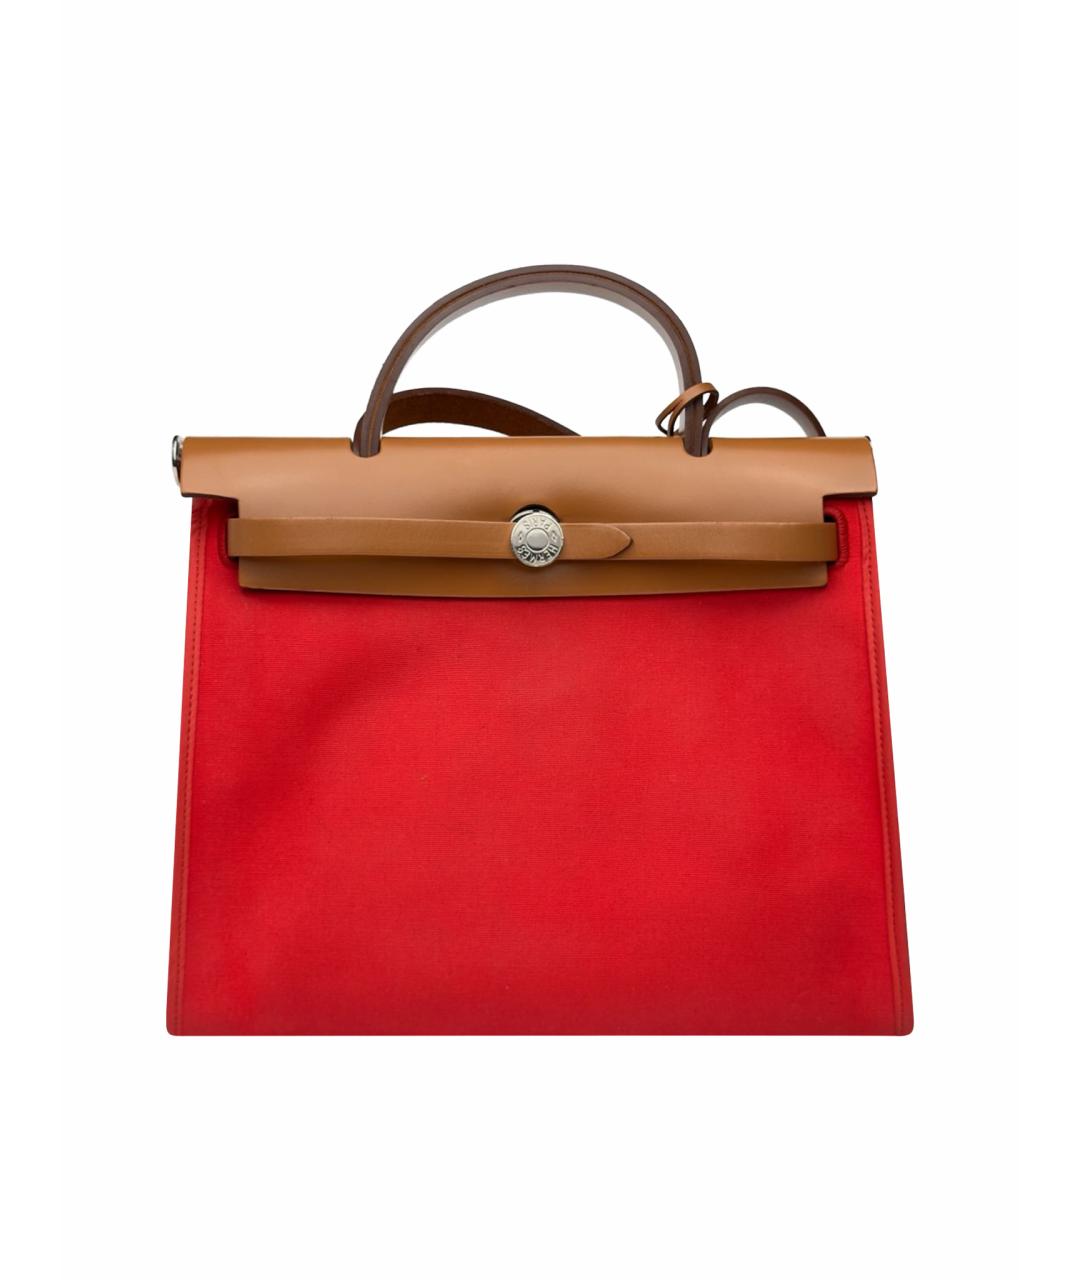 HERMES PRE-OWNED Красная тканевая сумка с короткими ручками, фото 1